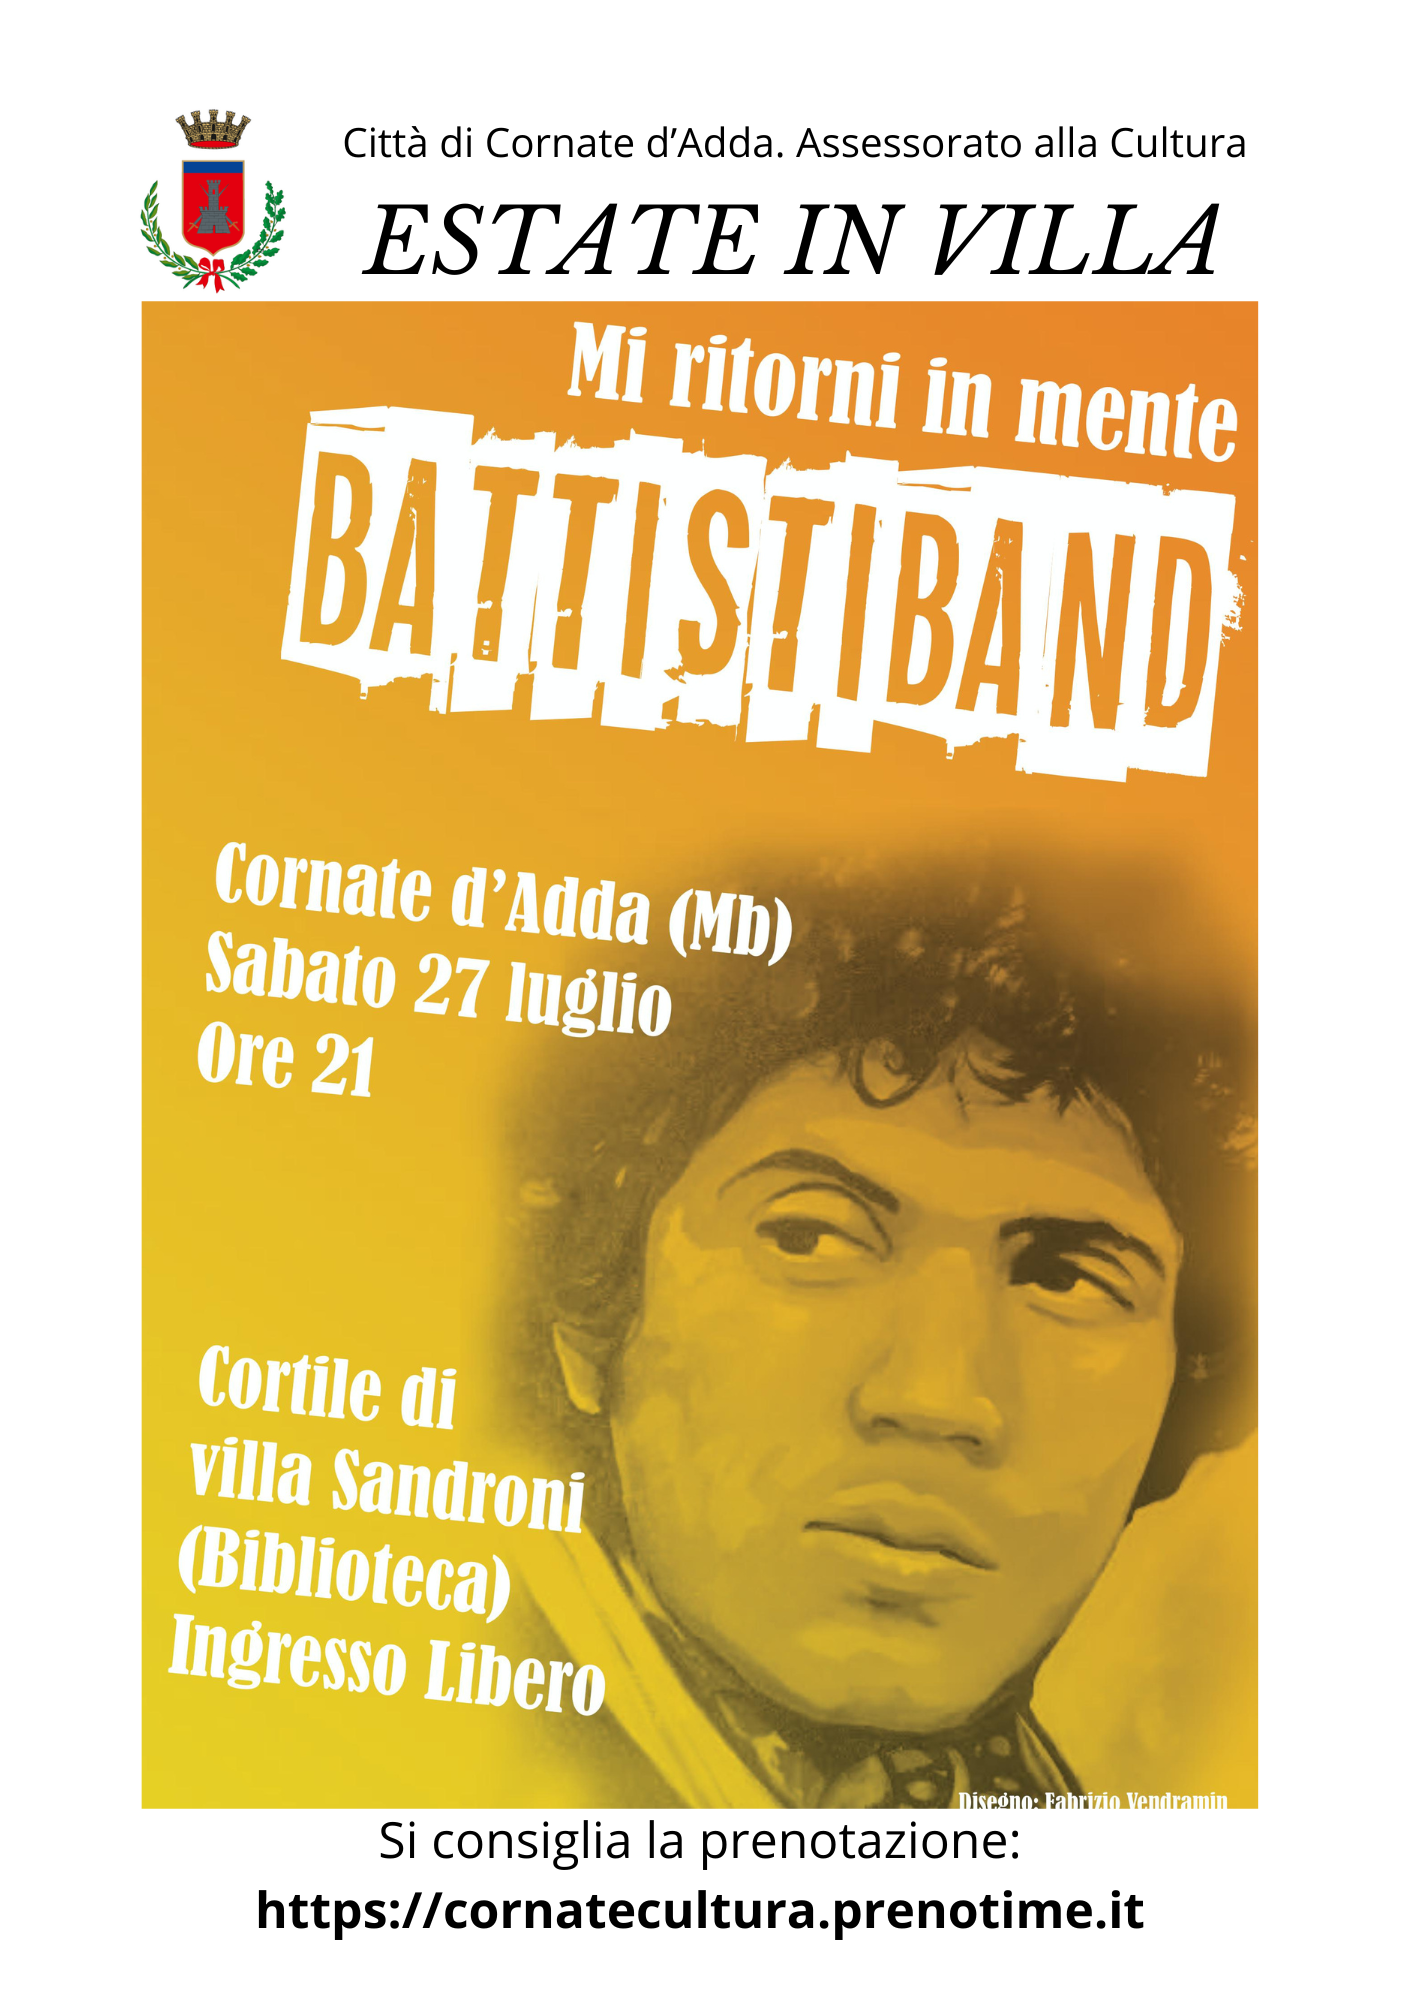 Battisti Band Serata Lucio Battisti